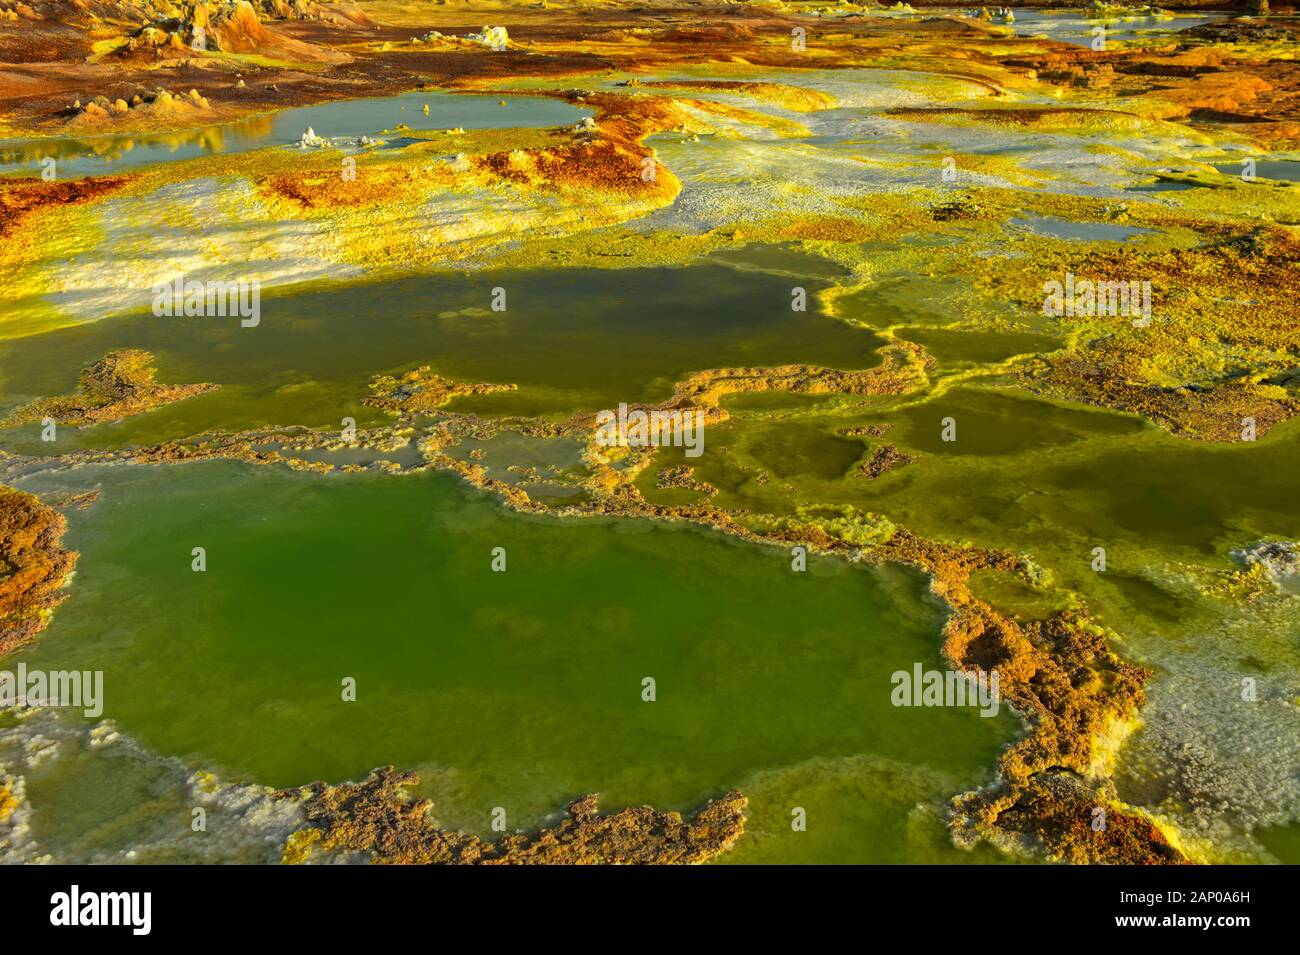 Acid brine Pool mit Schwefelsäure Sedimente, geothermische Feld von Dallol, Danakil Depression, Afar Dreieck, Äthiopien Stockfoto